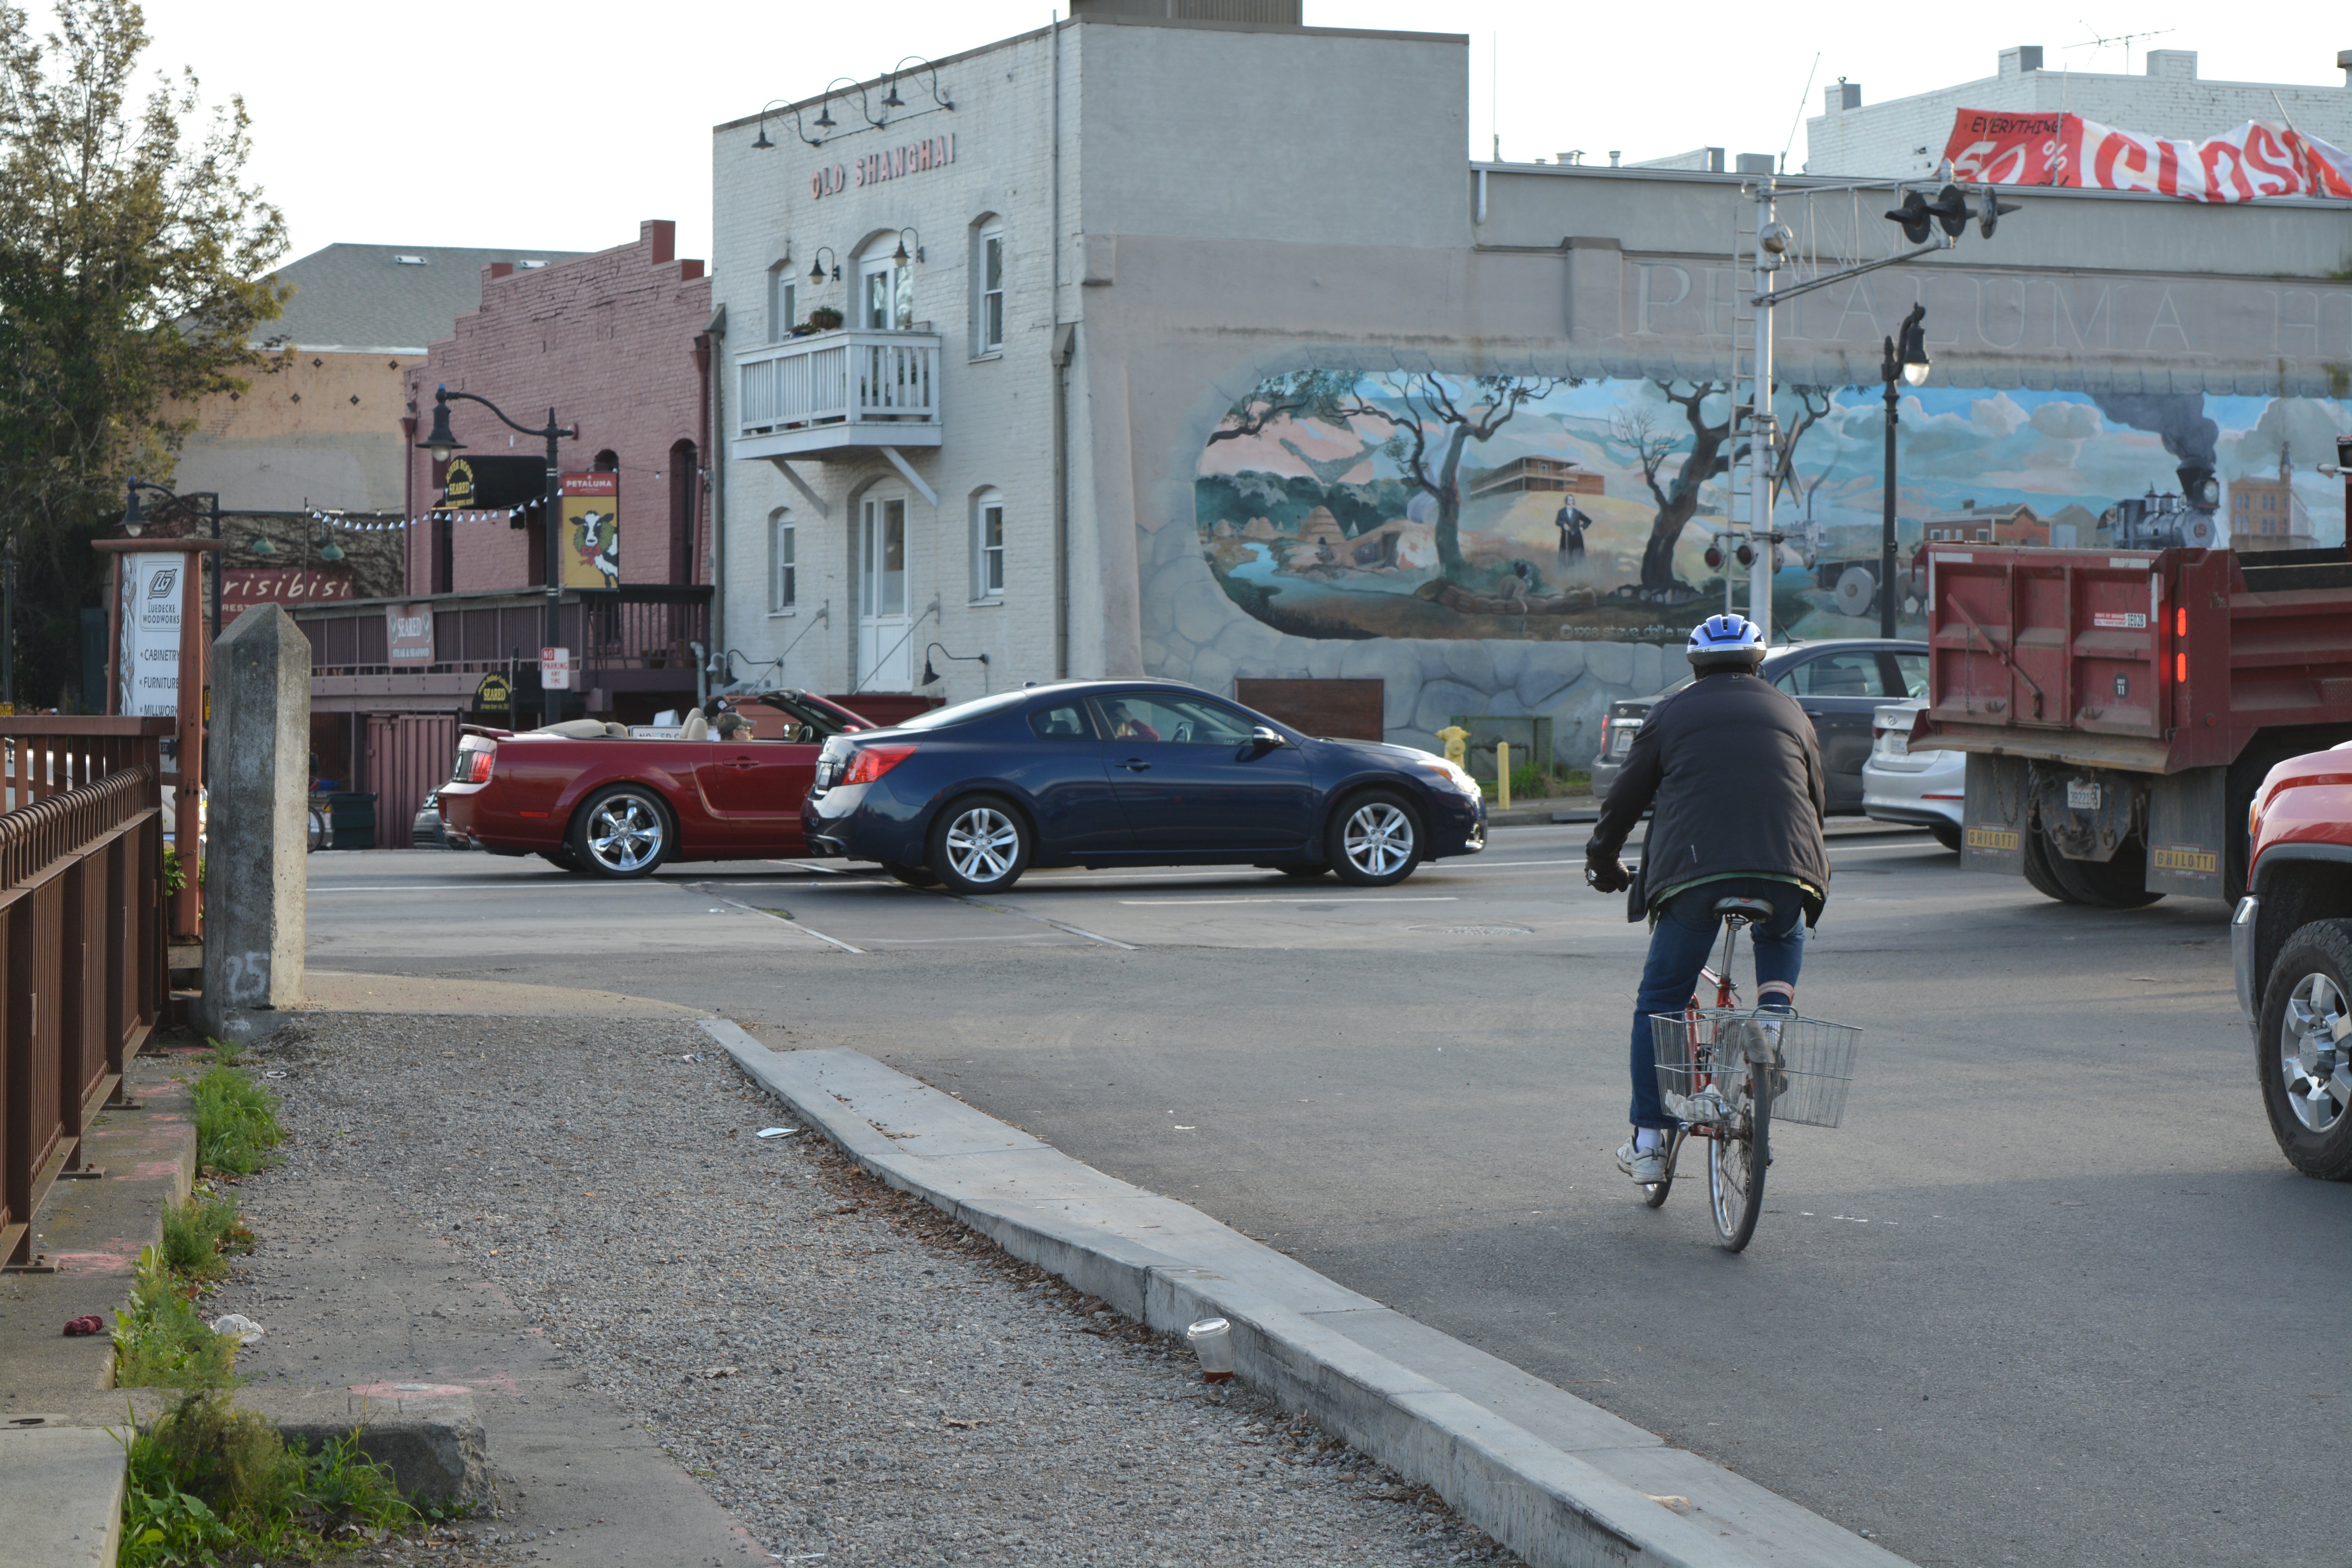 Las autoridades esperan que los residentes de Petaluma, que tiene una geografía principalmente plana, adopte medios de transporte más sostenibles, como la bicicleta